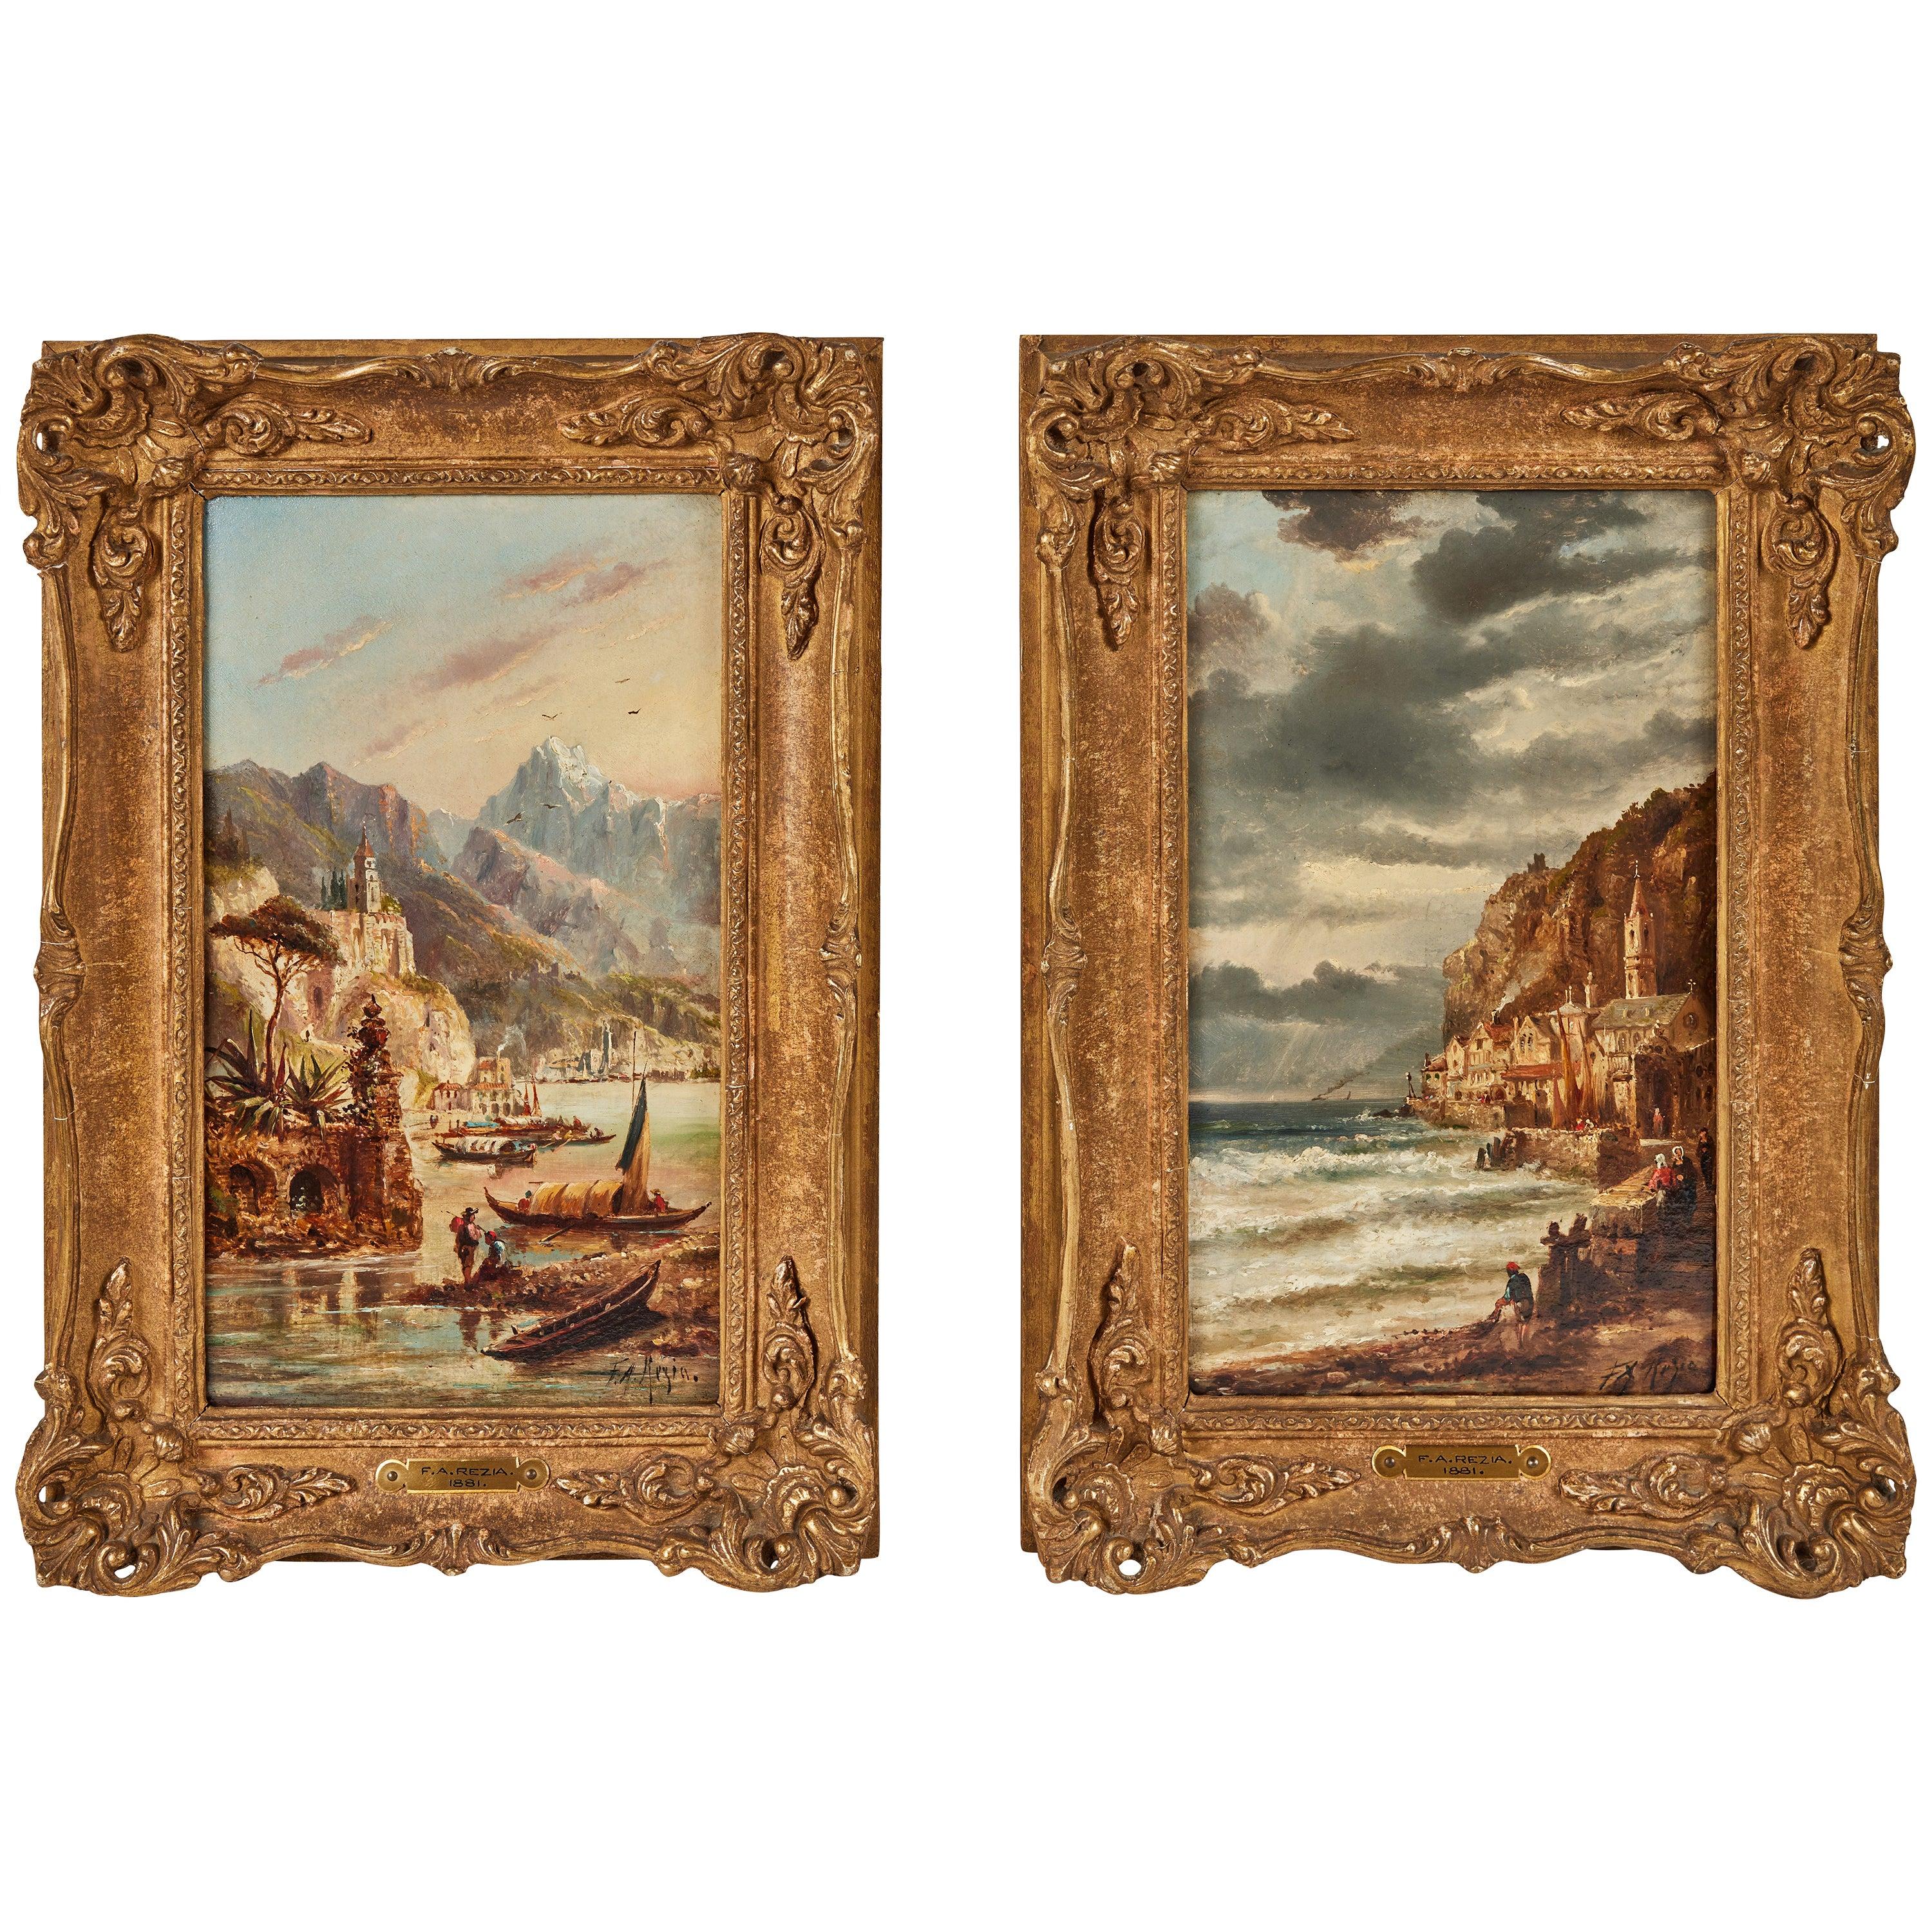 1880, peintures à l'huile italiennes - Painting de Franz Auguste Rezia